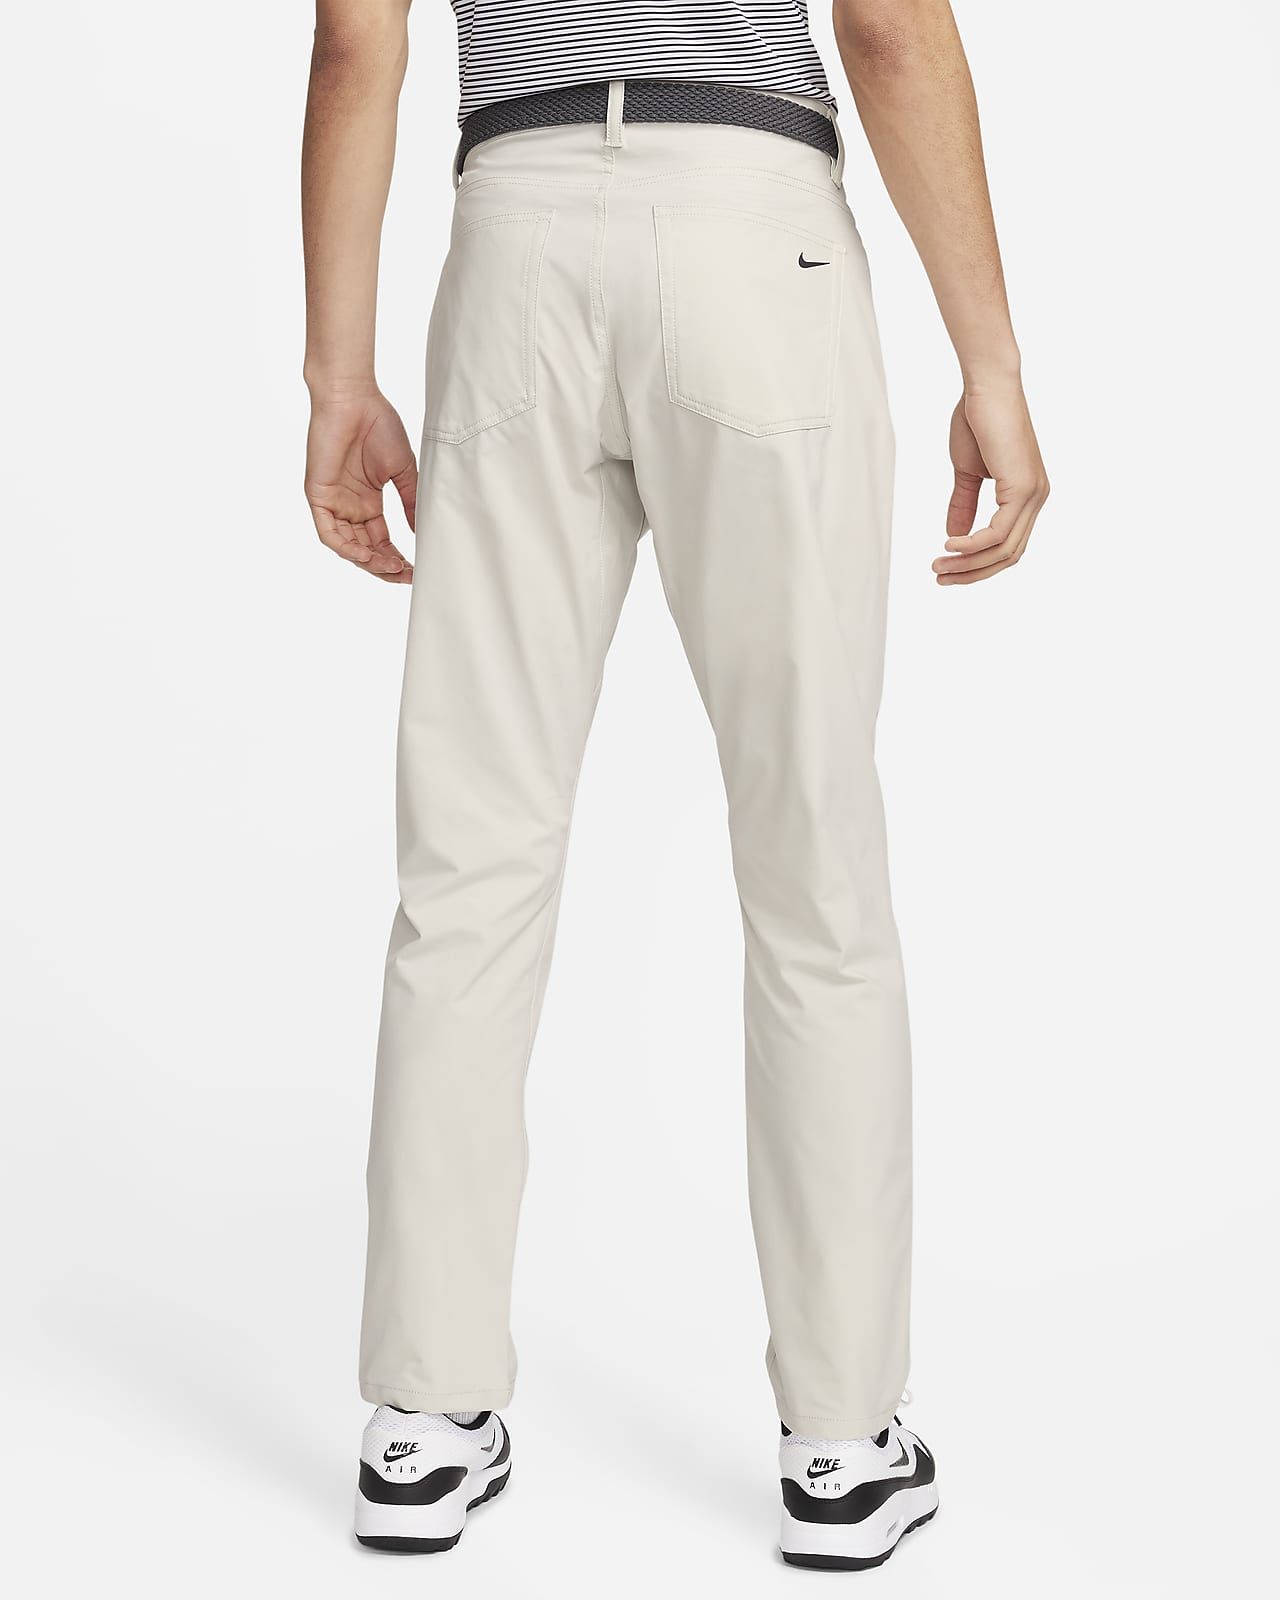 Buy Nike Dri-FIT Repel 5-Pocket Slim Fit Pants